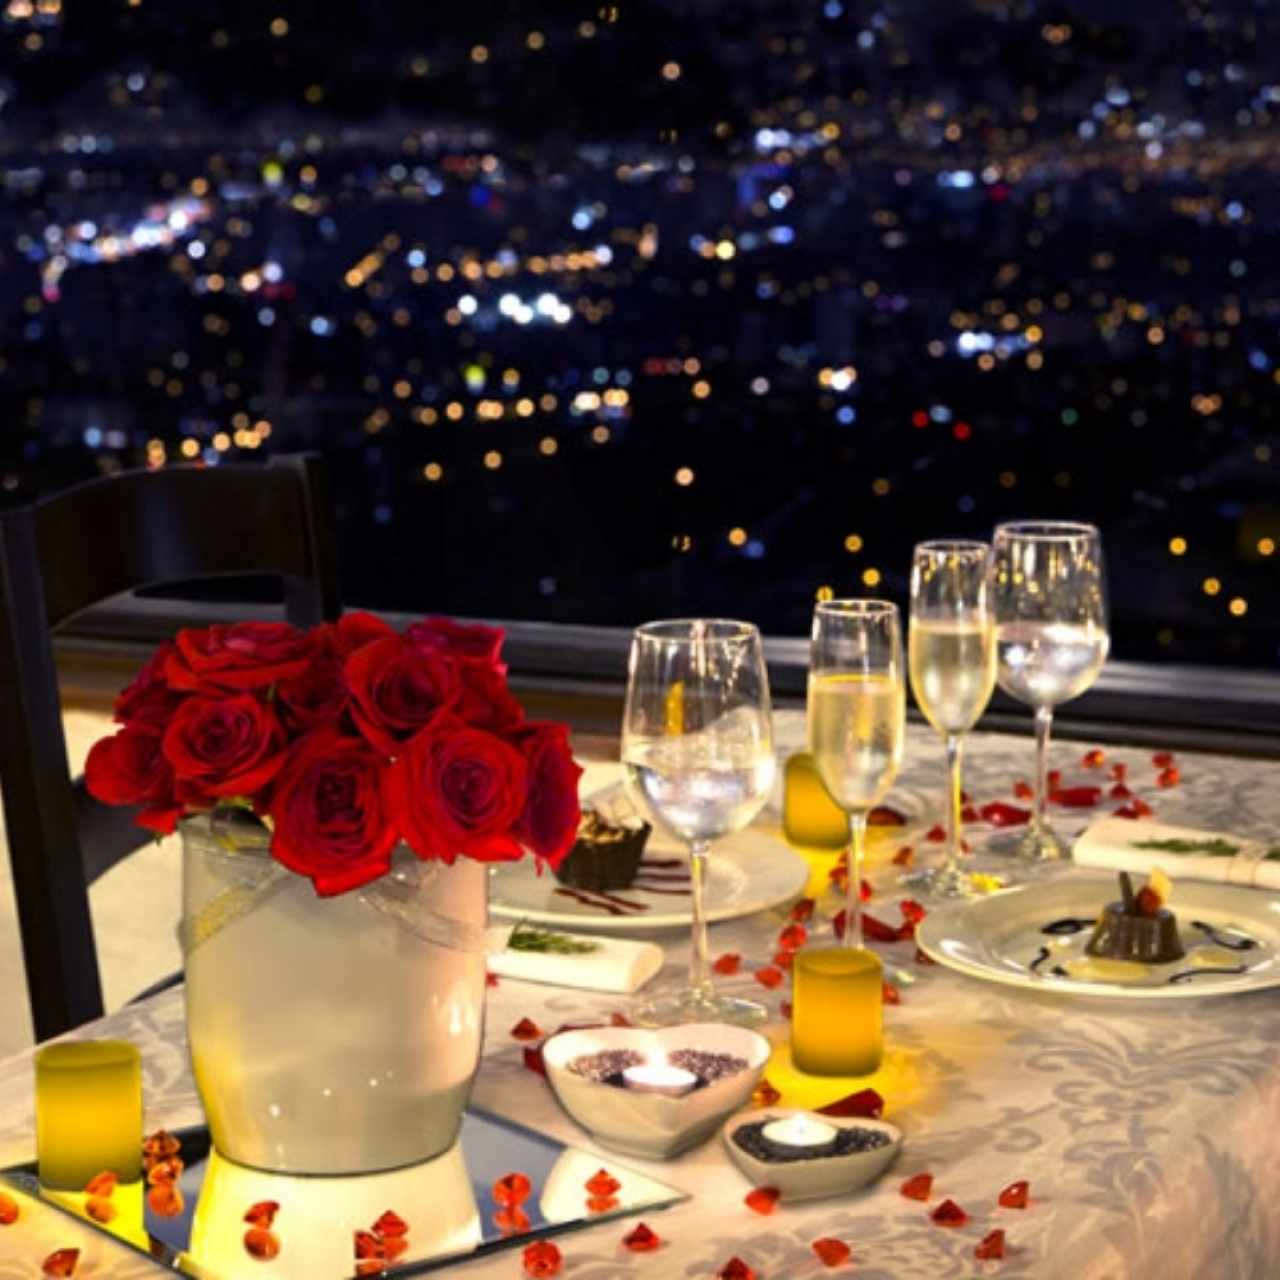 15 Restaurantes románticos y bonitos para llevar a tu pareja a una cita |  [Degusta]